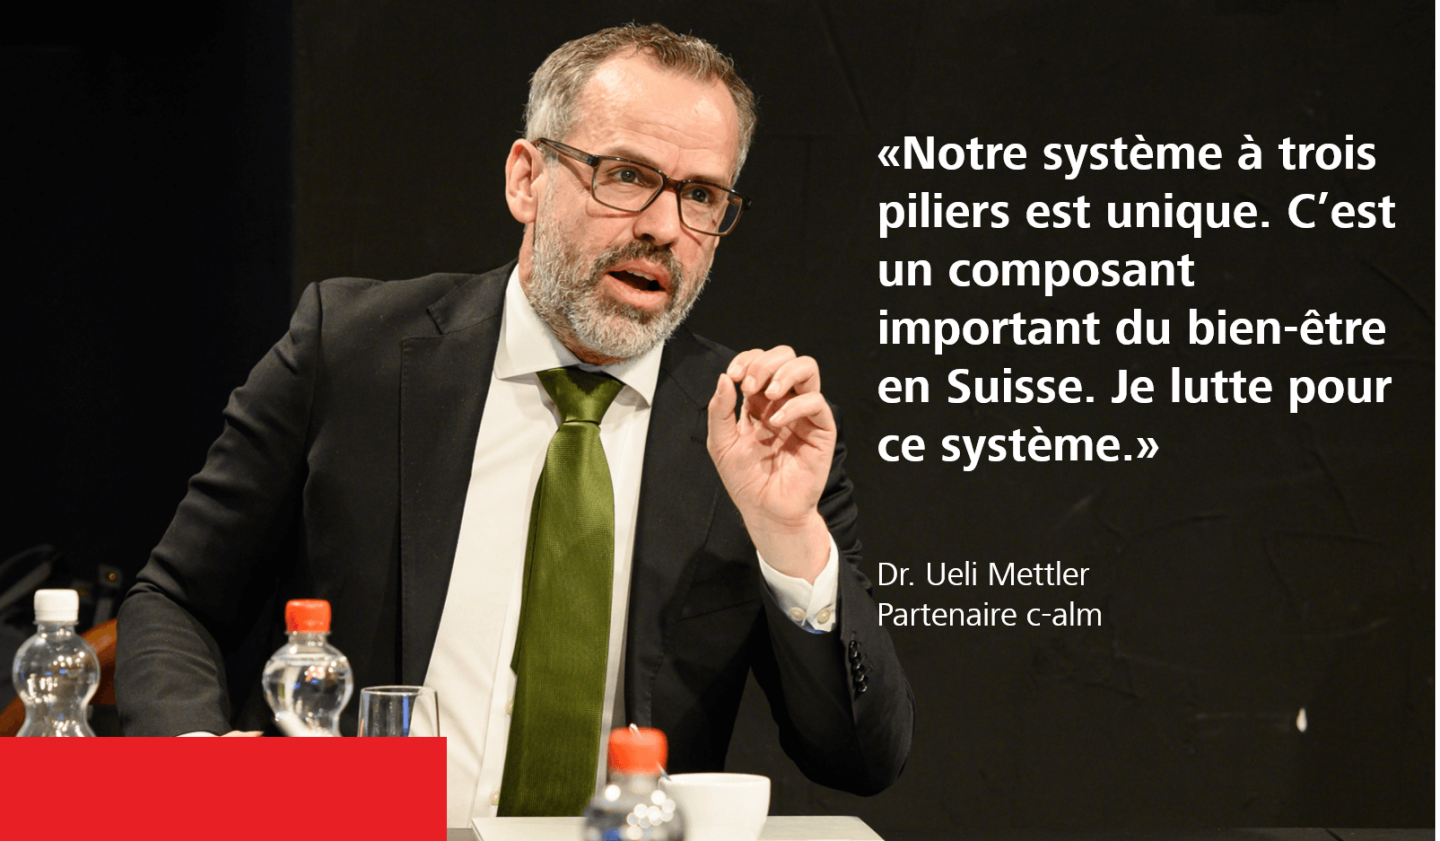 «Notre système à trois piliers est unique. C’est un composant important du bien-être en Suisse. Je lutte pour ce système.» - Dr. Ueli Mettler, partenaire c-alm